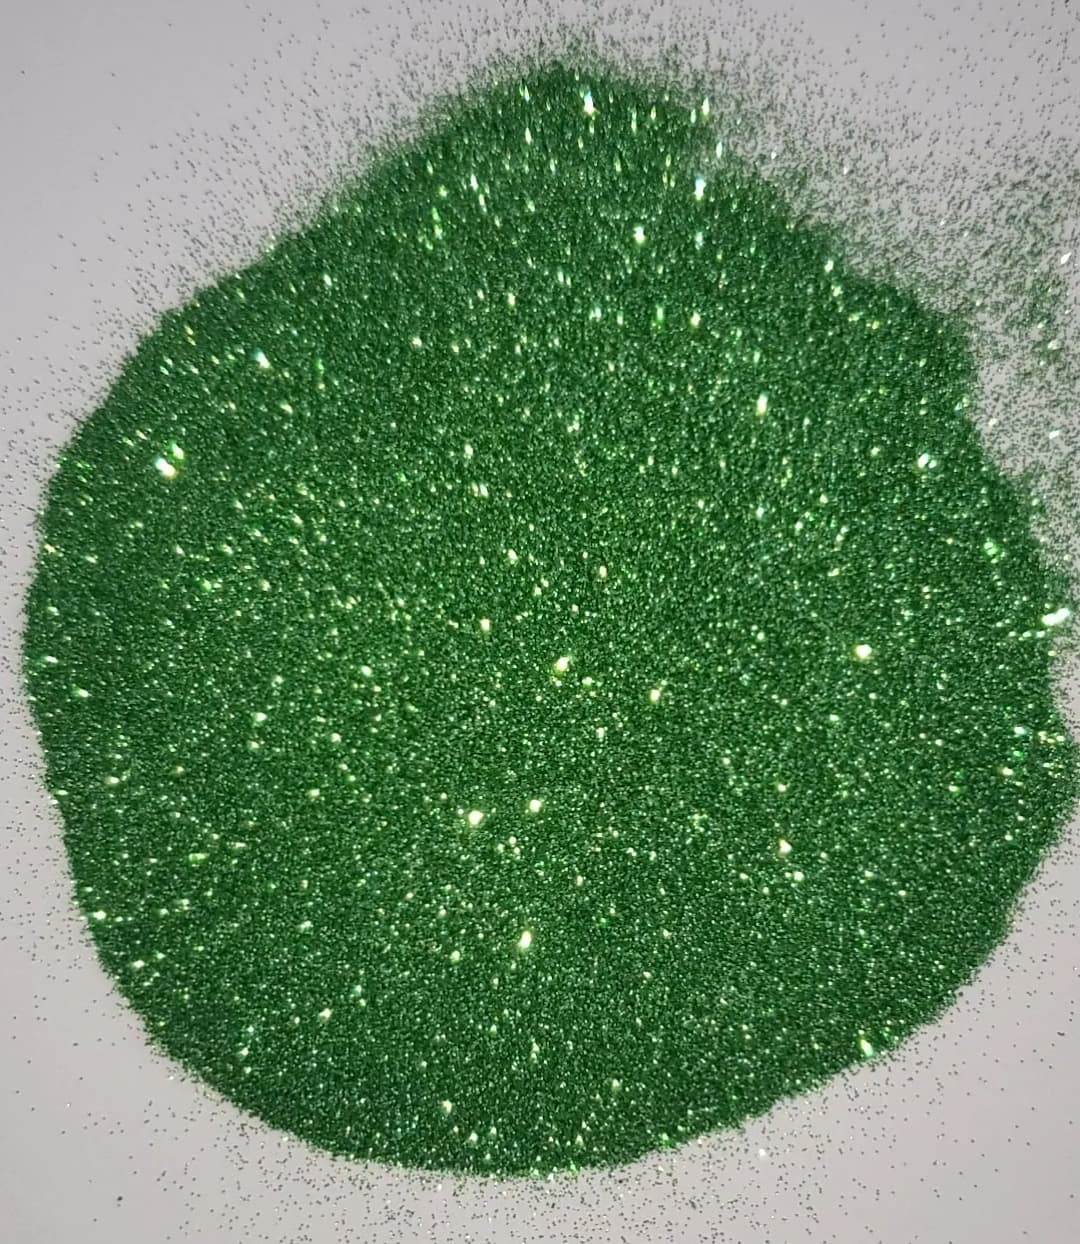 Spearmint - Ultra Fine Glitter